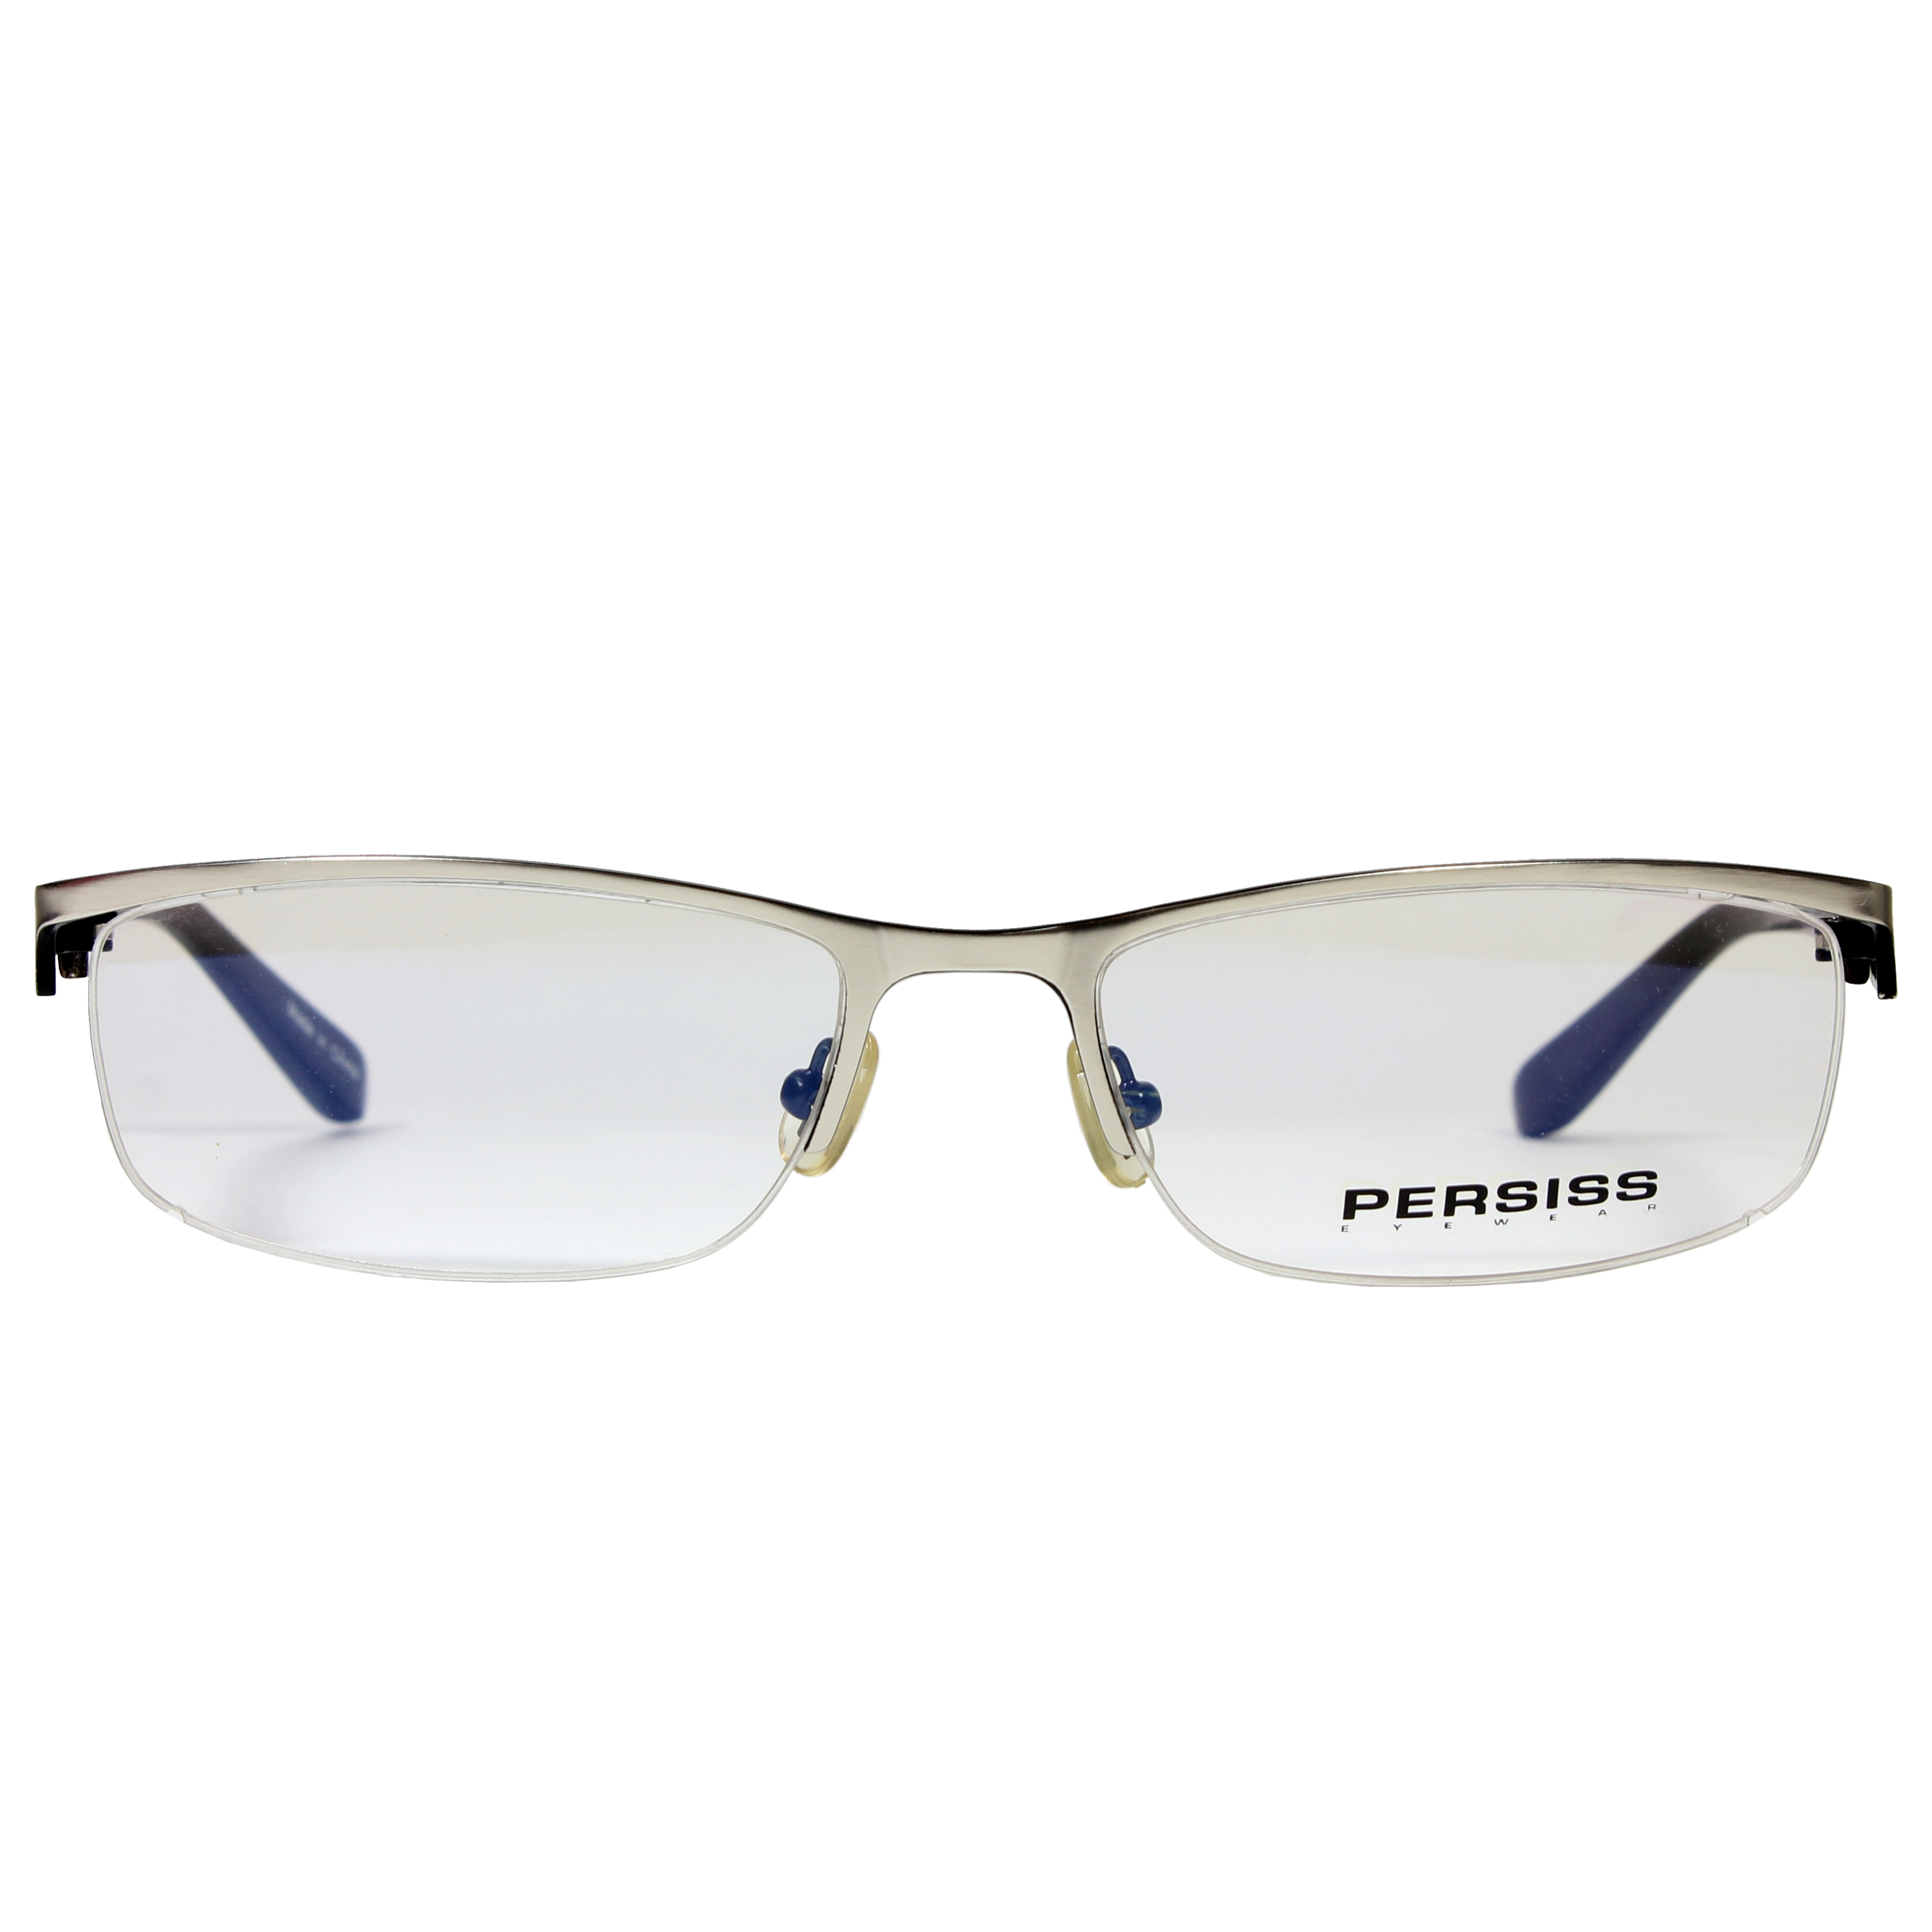 فریم عینک طبی پرسیس مدل 3004